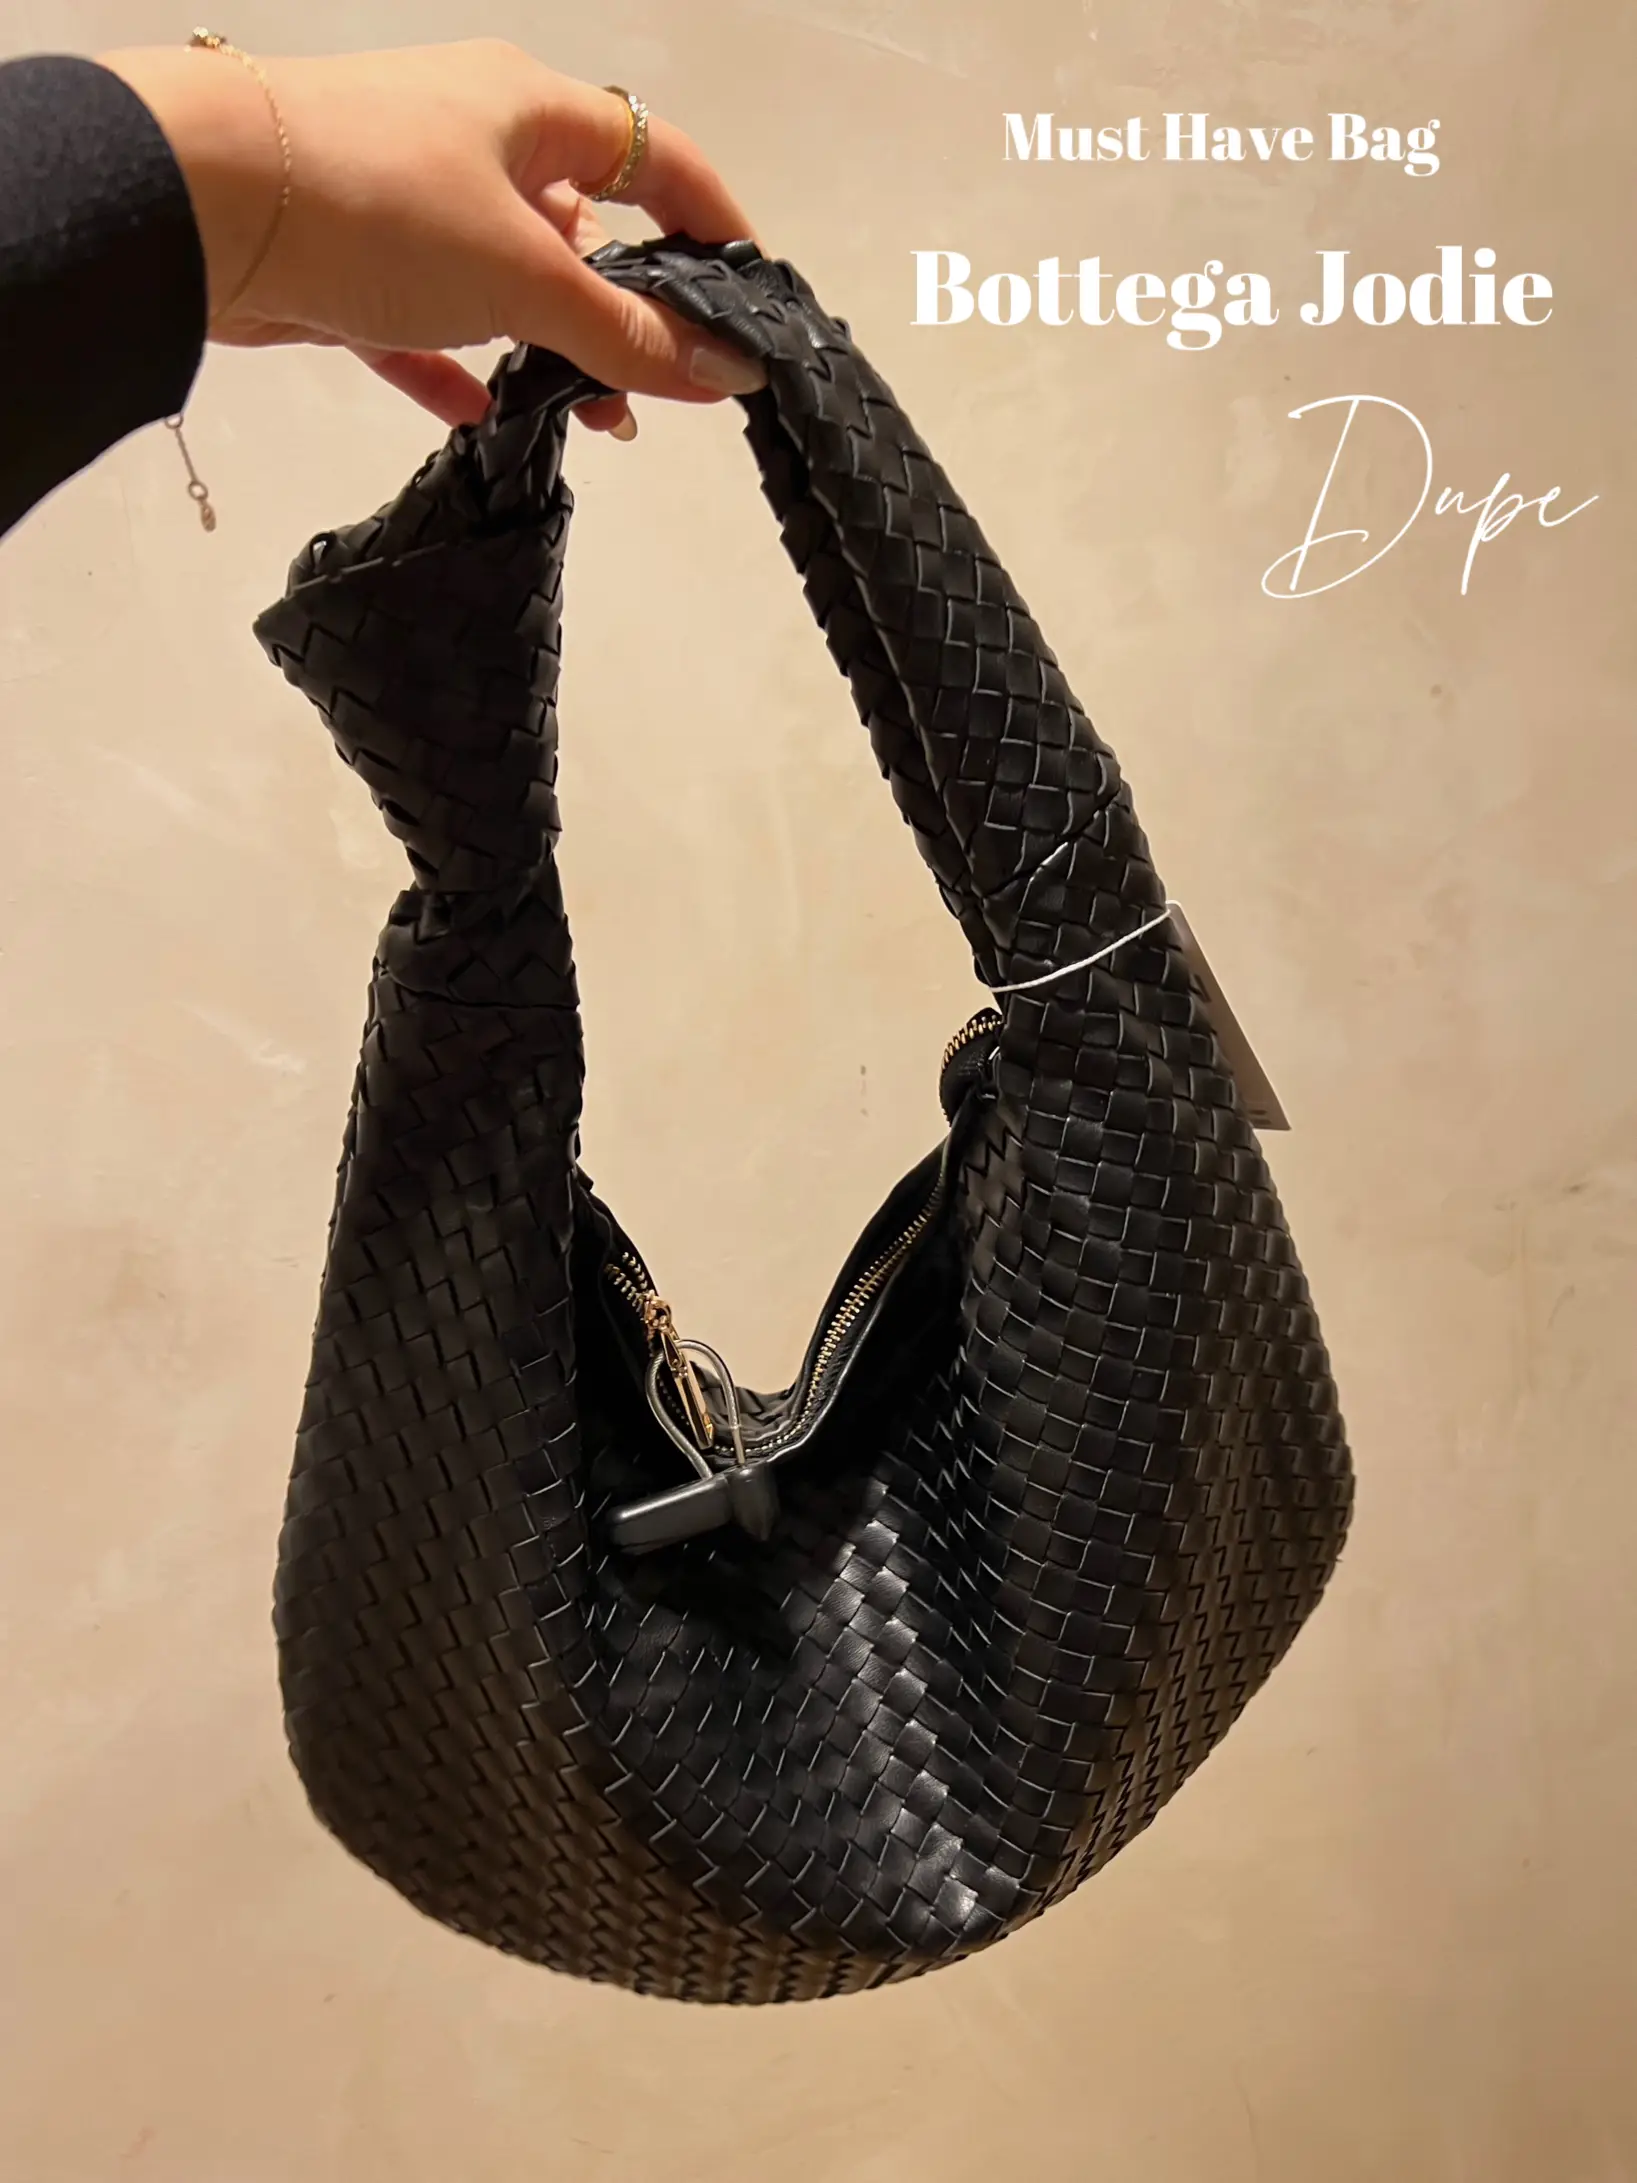 Designer Dupe Alert: Bottega Veneta Jodie Bag - The Brunette Nomad